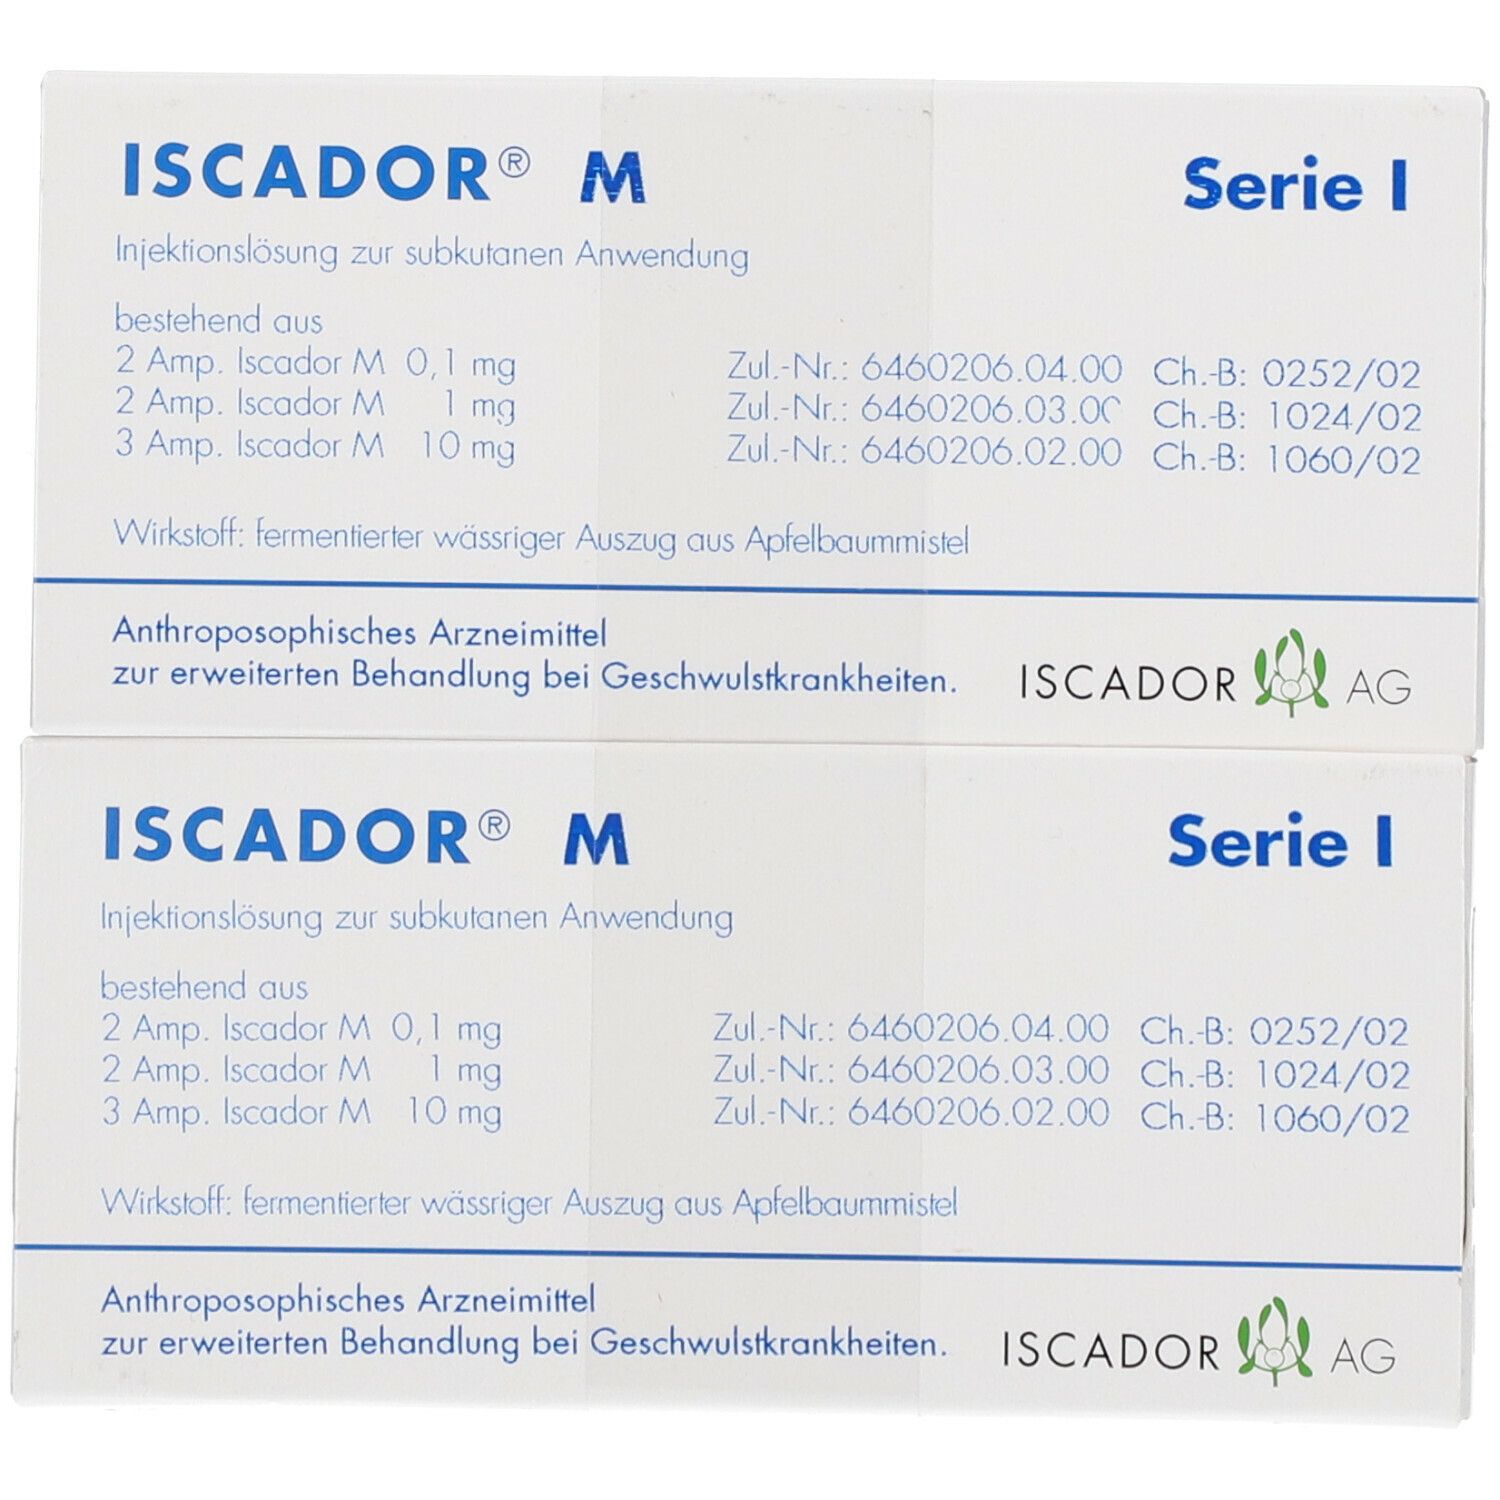 ISCADOR® M Serie I